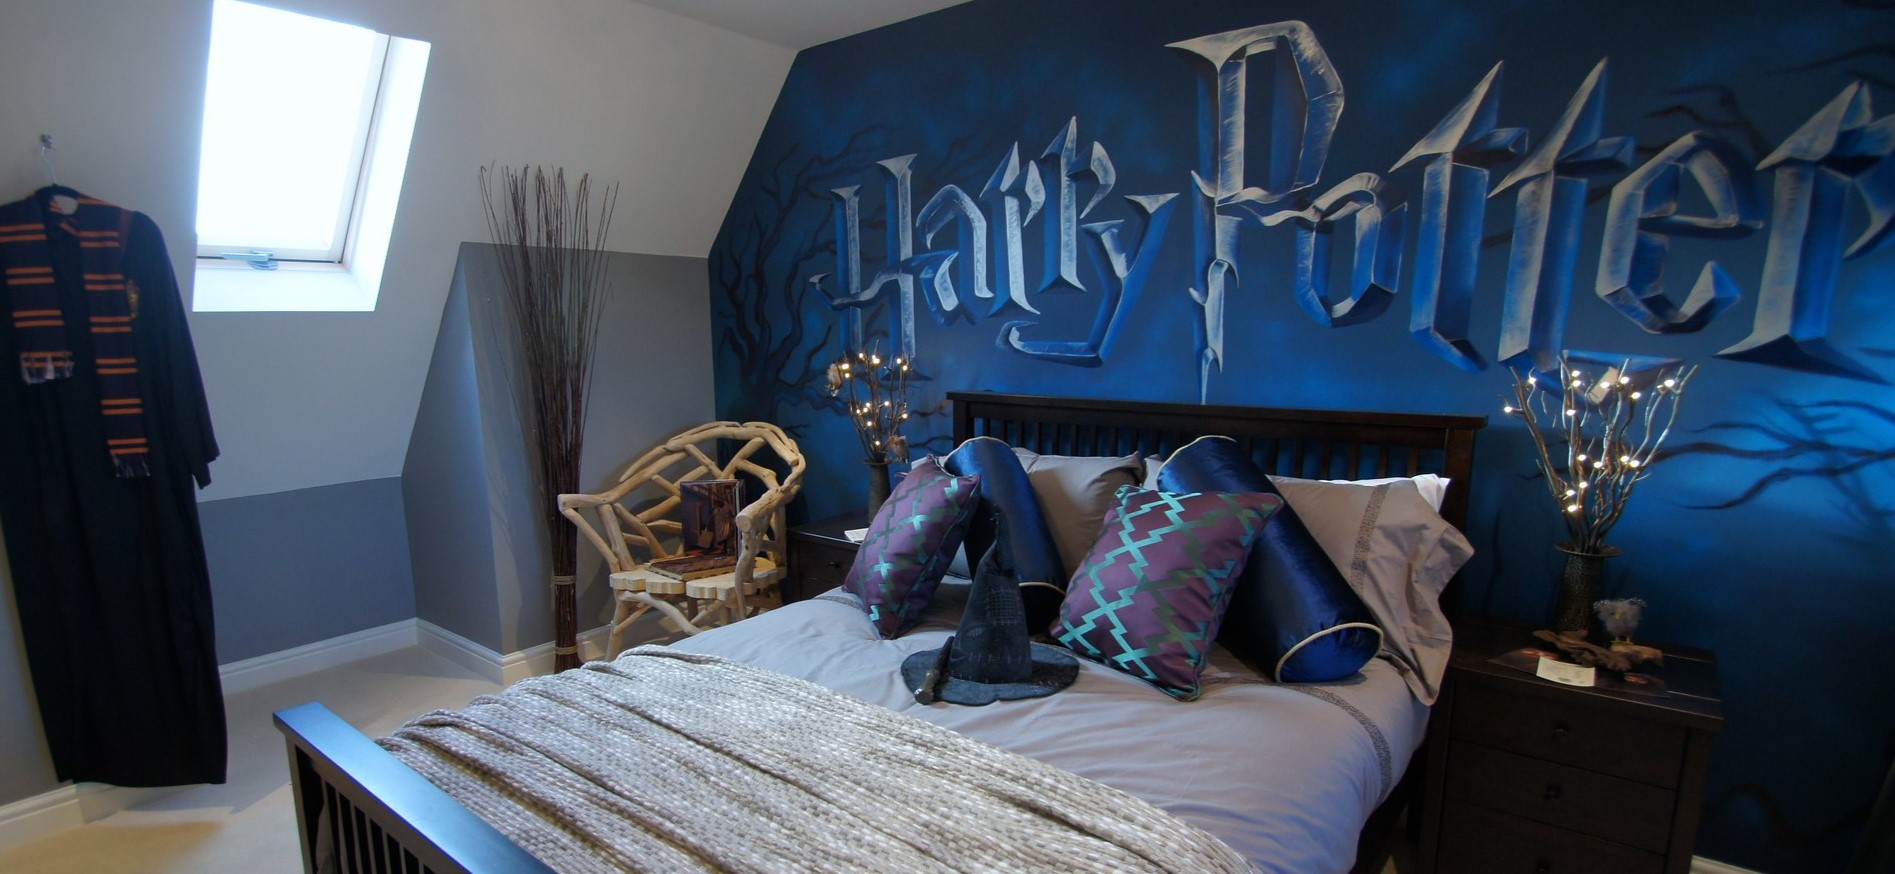 Оформление комнаты по мотивам фильма Гарри Поттер